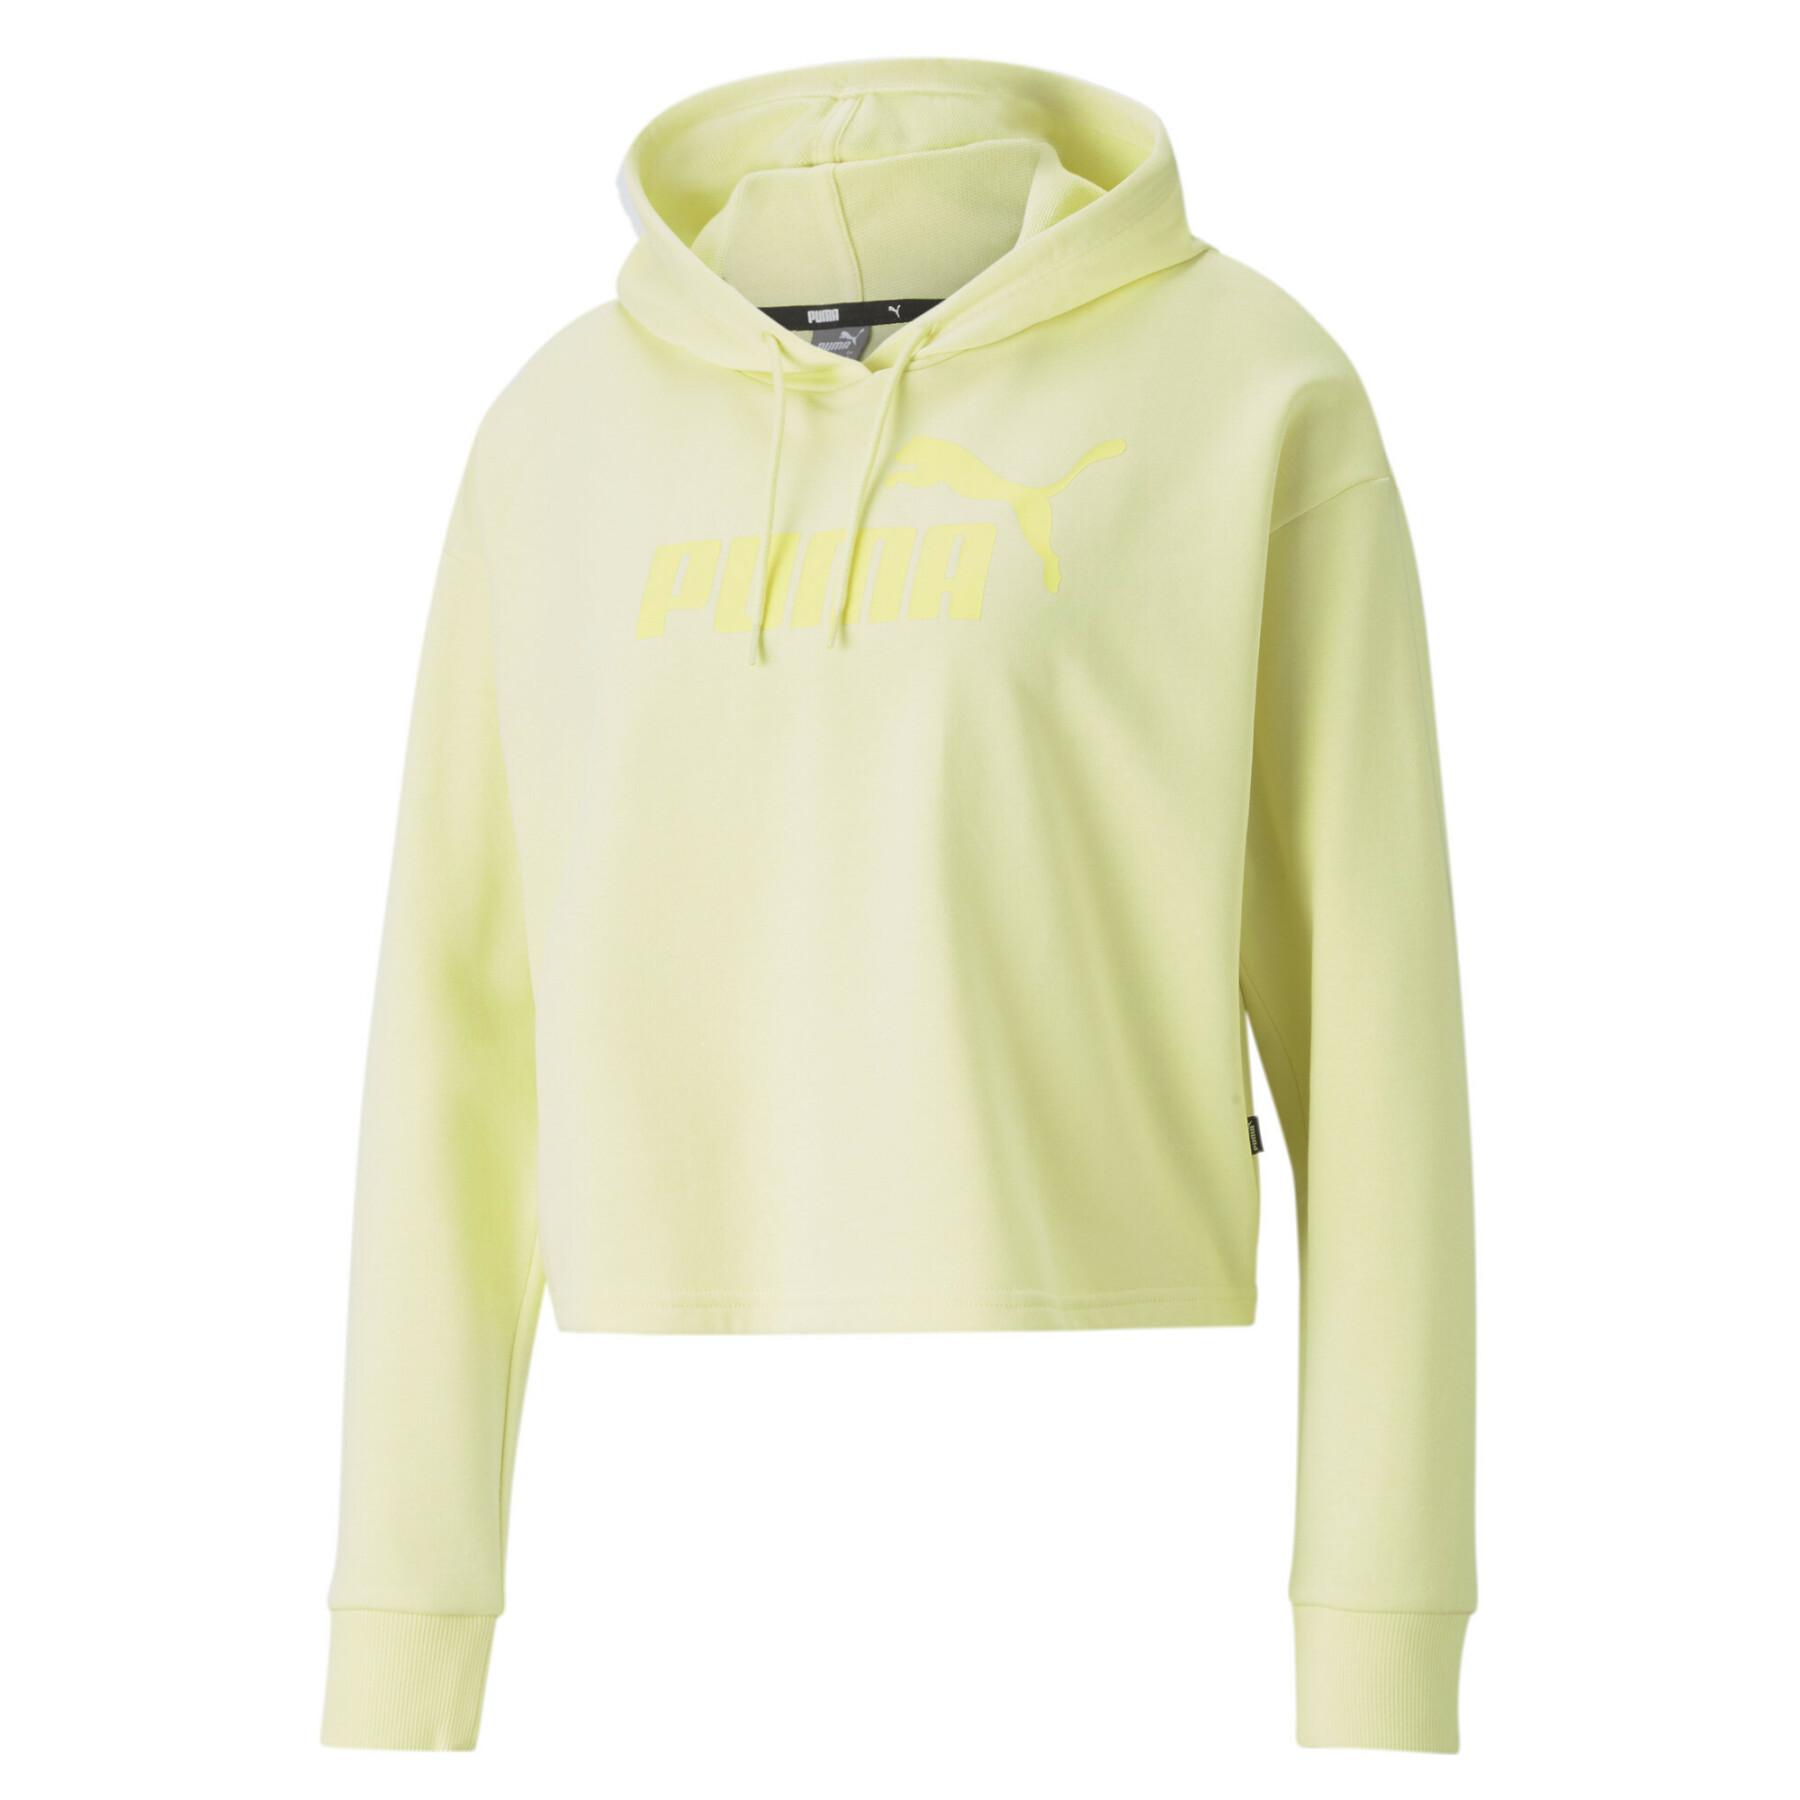 Women's crop top sweatshirt Puma Essential